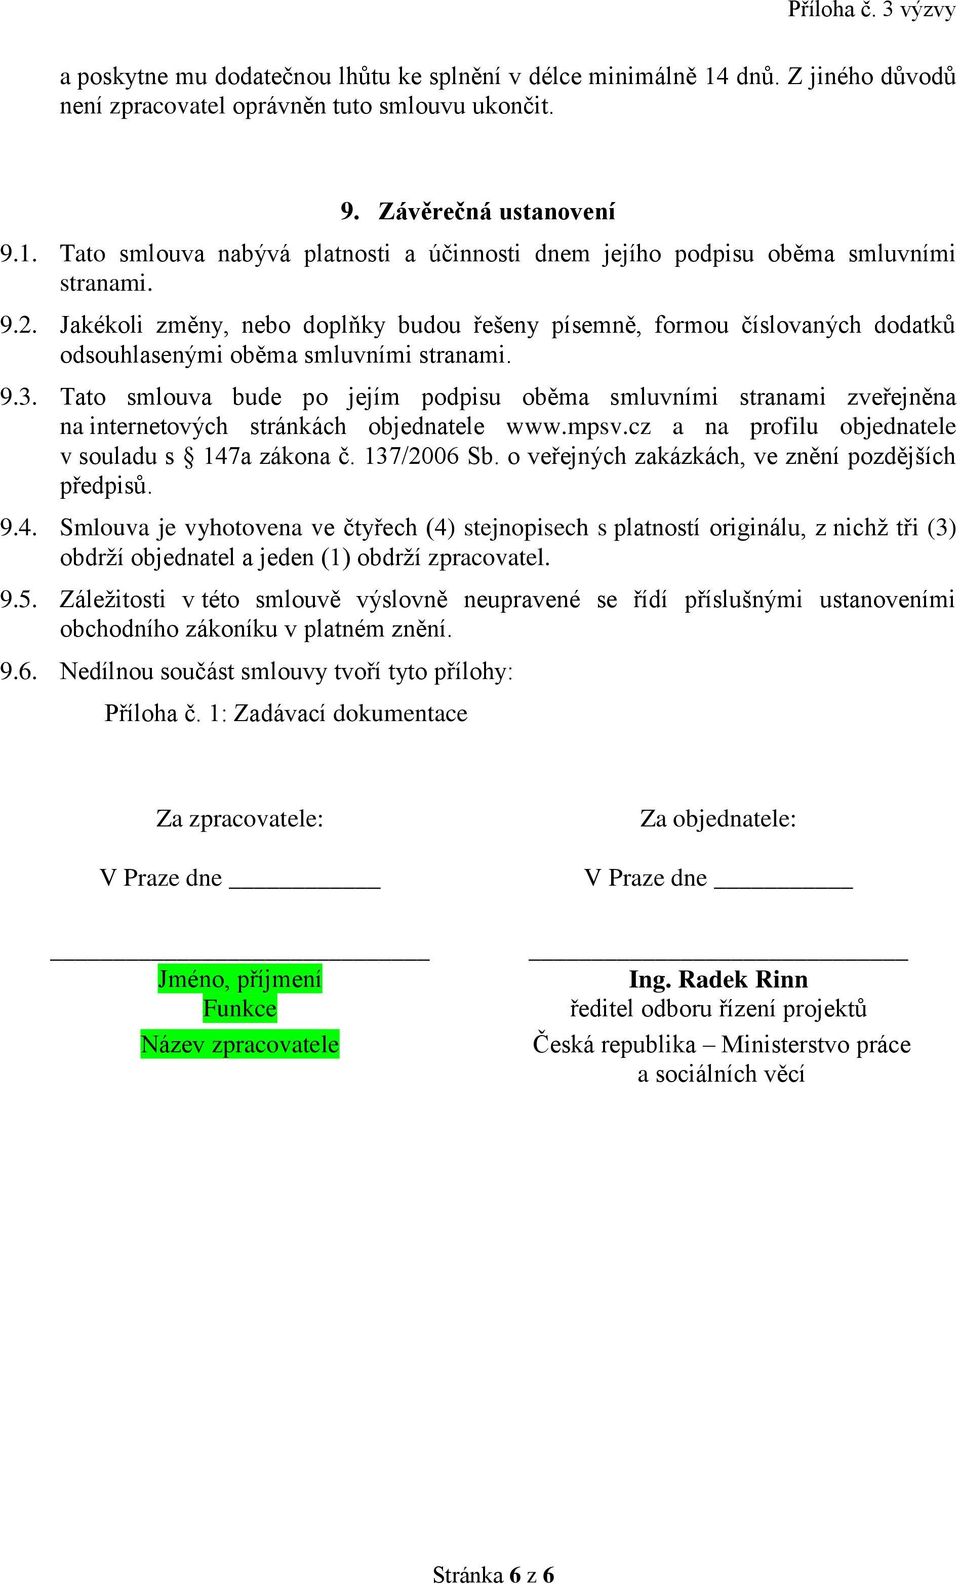 Tato smlouva bude po jejím podpisu oběma smluvními stranami zveřejněna na internetových stránkách objednatele www.mpsv.cz a na profilu objednatele v souladu s 147a zákona č. 137/2006 Sb.